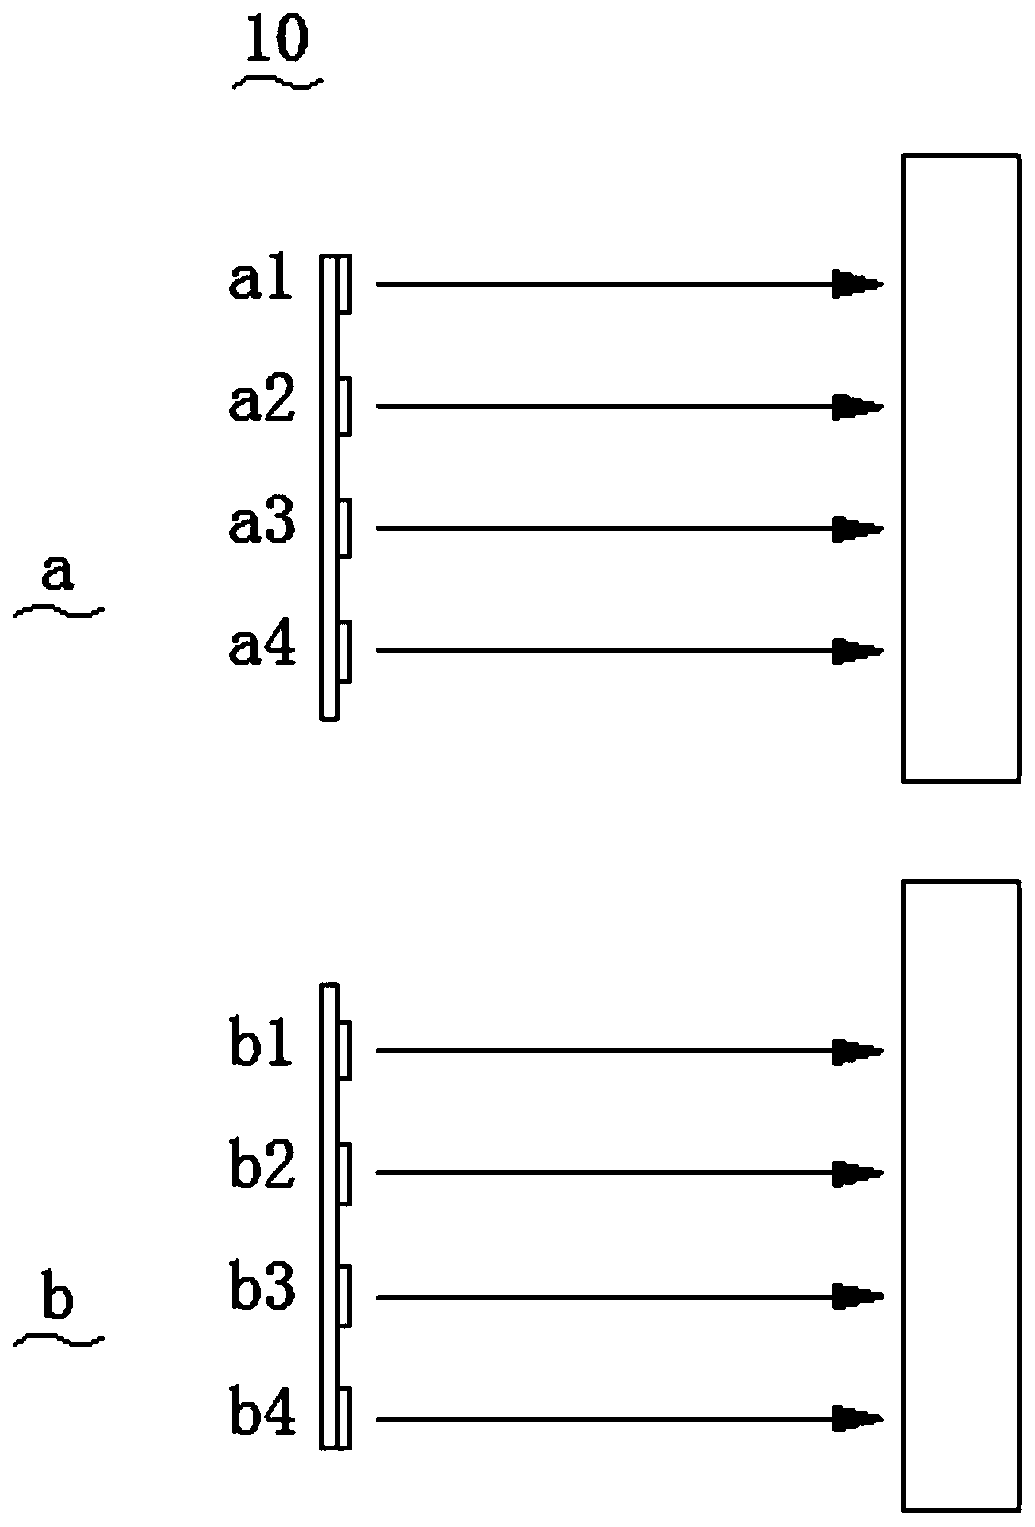 Multi-line lidar and control method of multi-line lidar